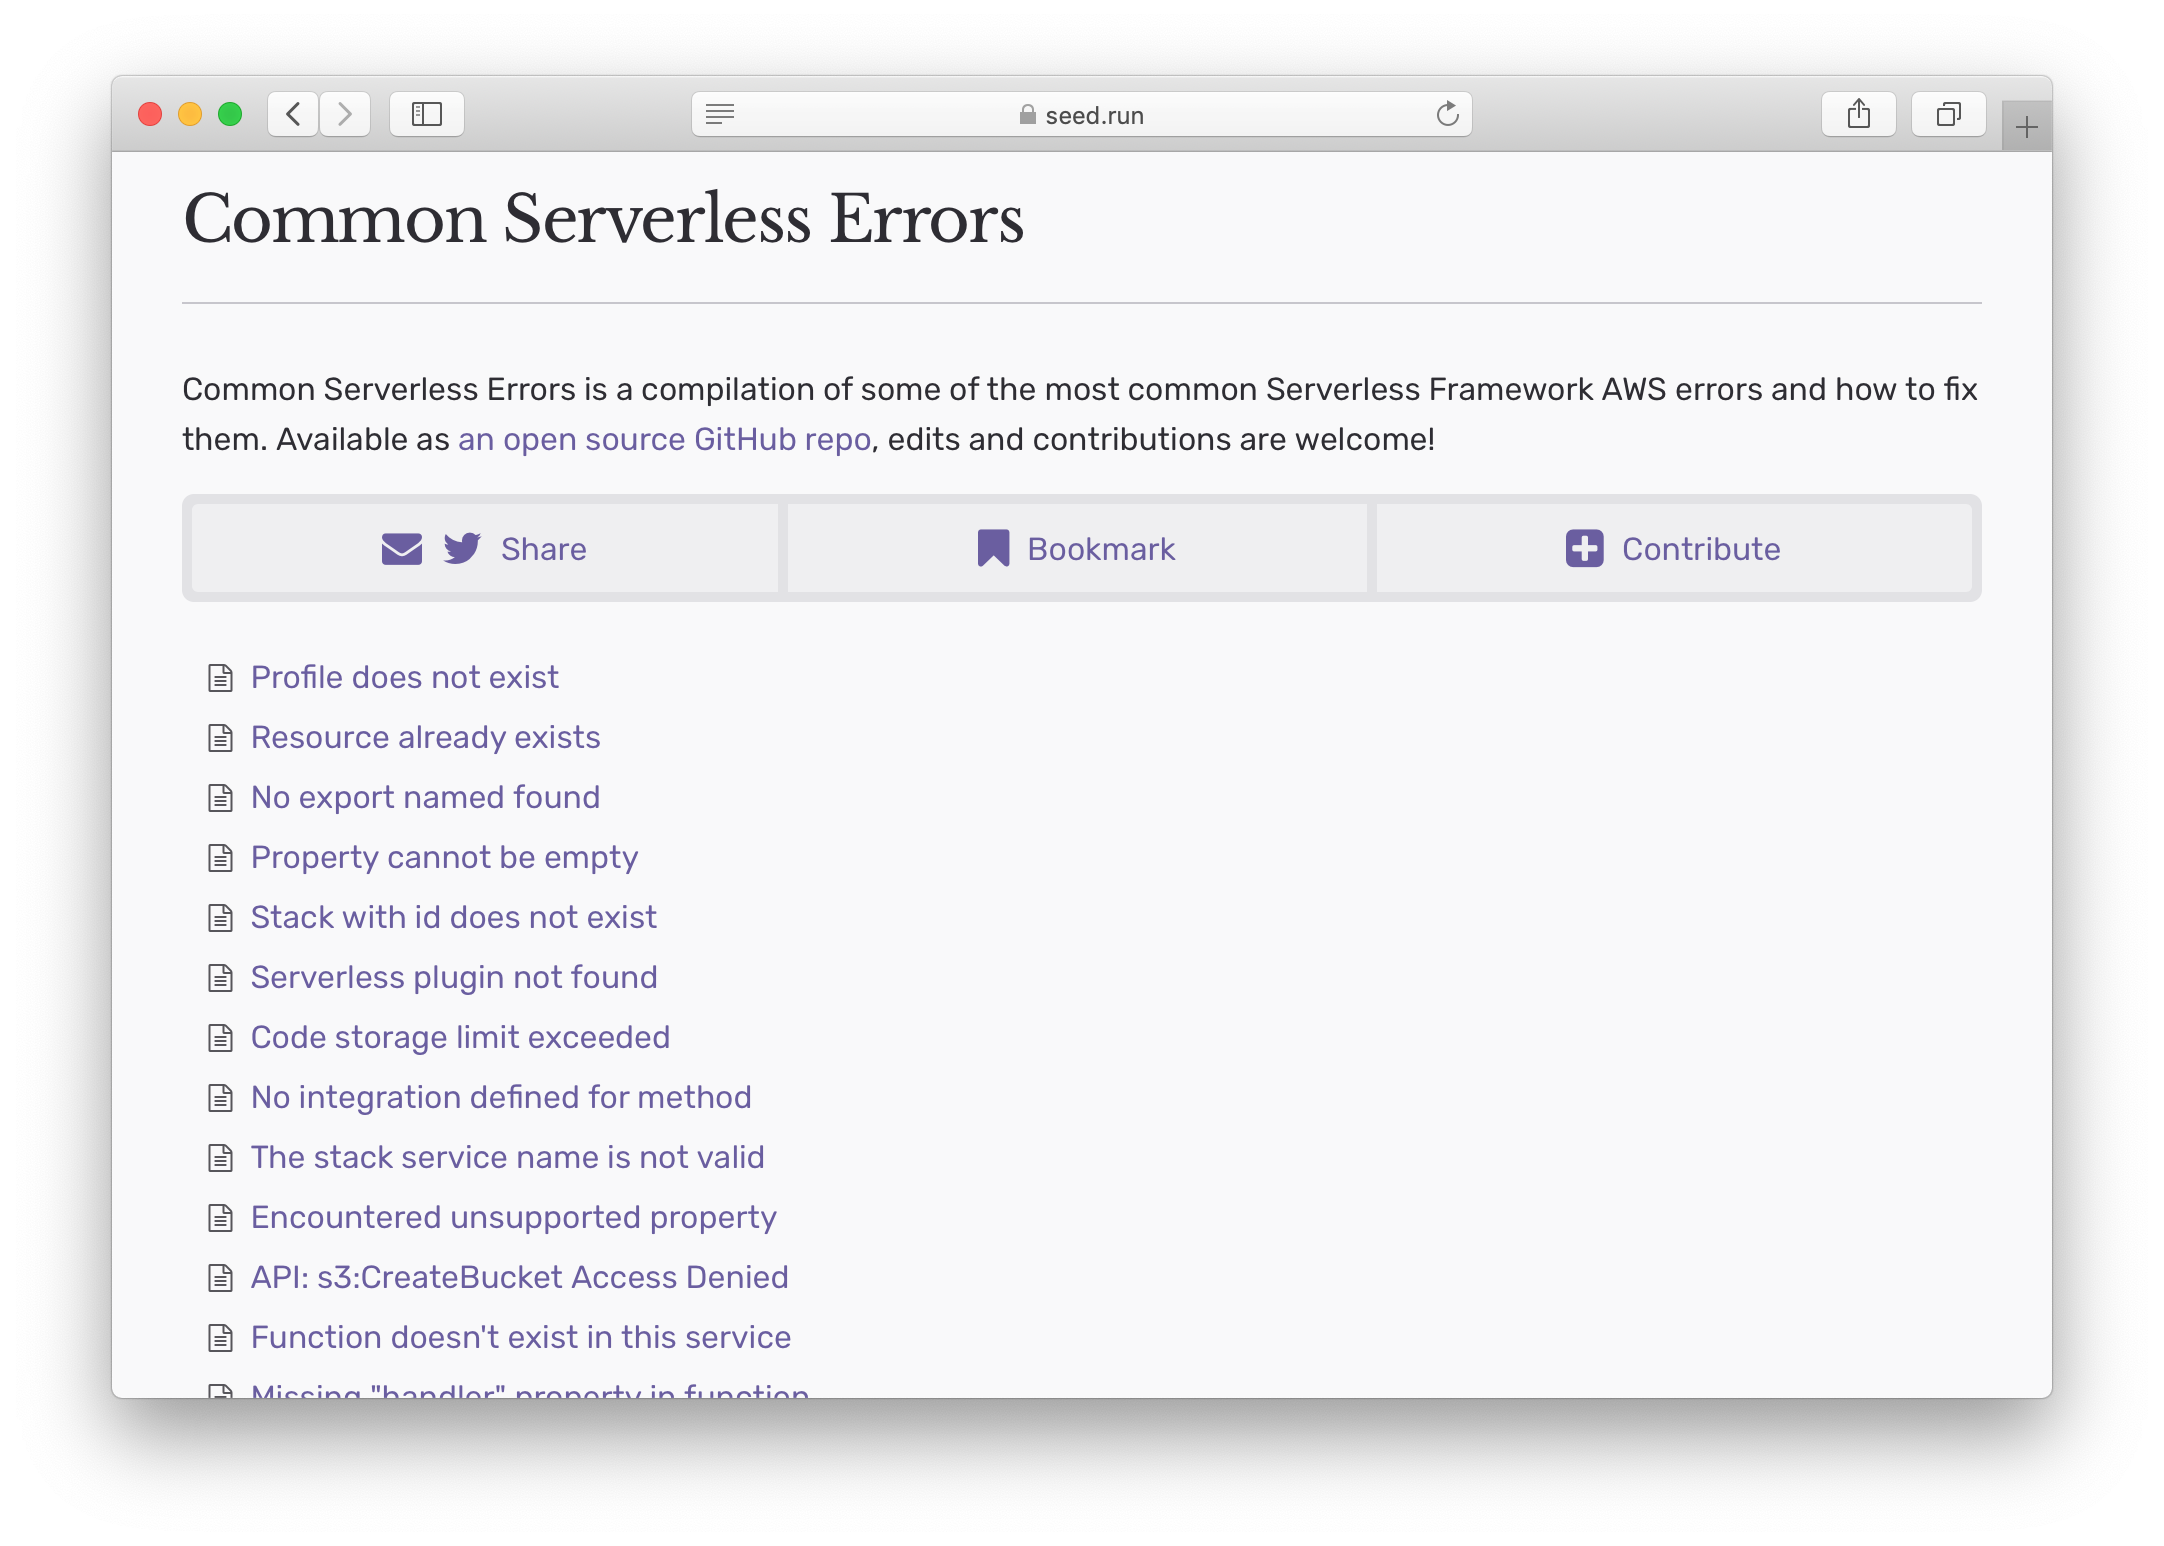 Common Serverless Errors microsite screenshot